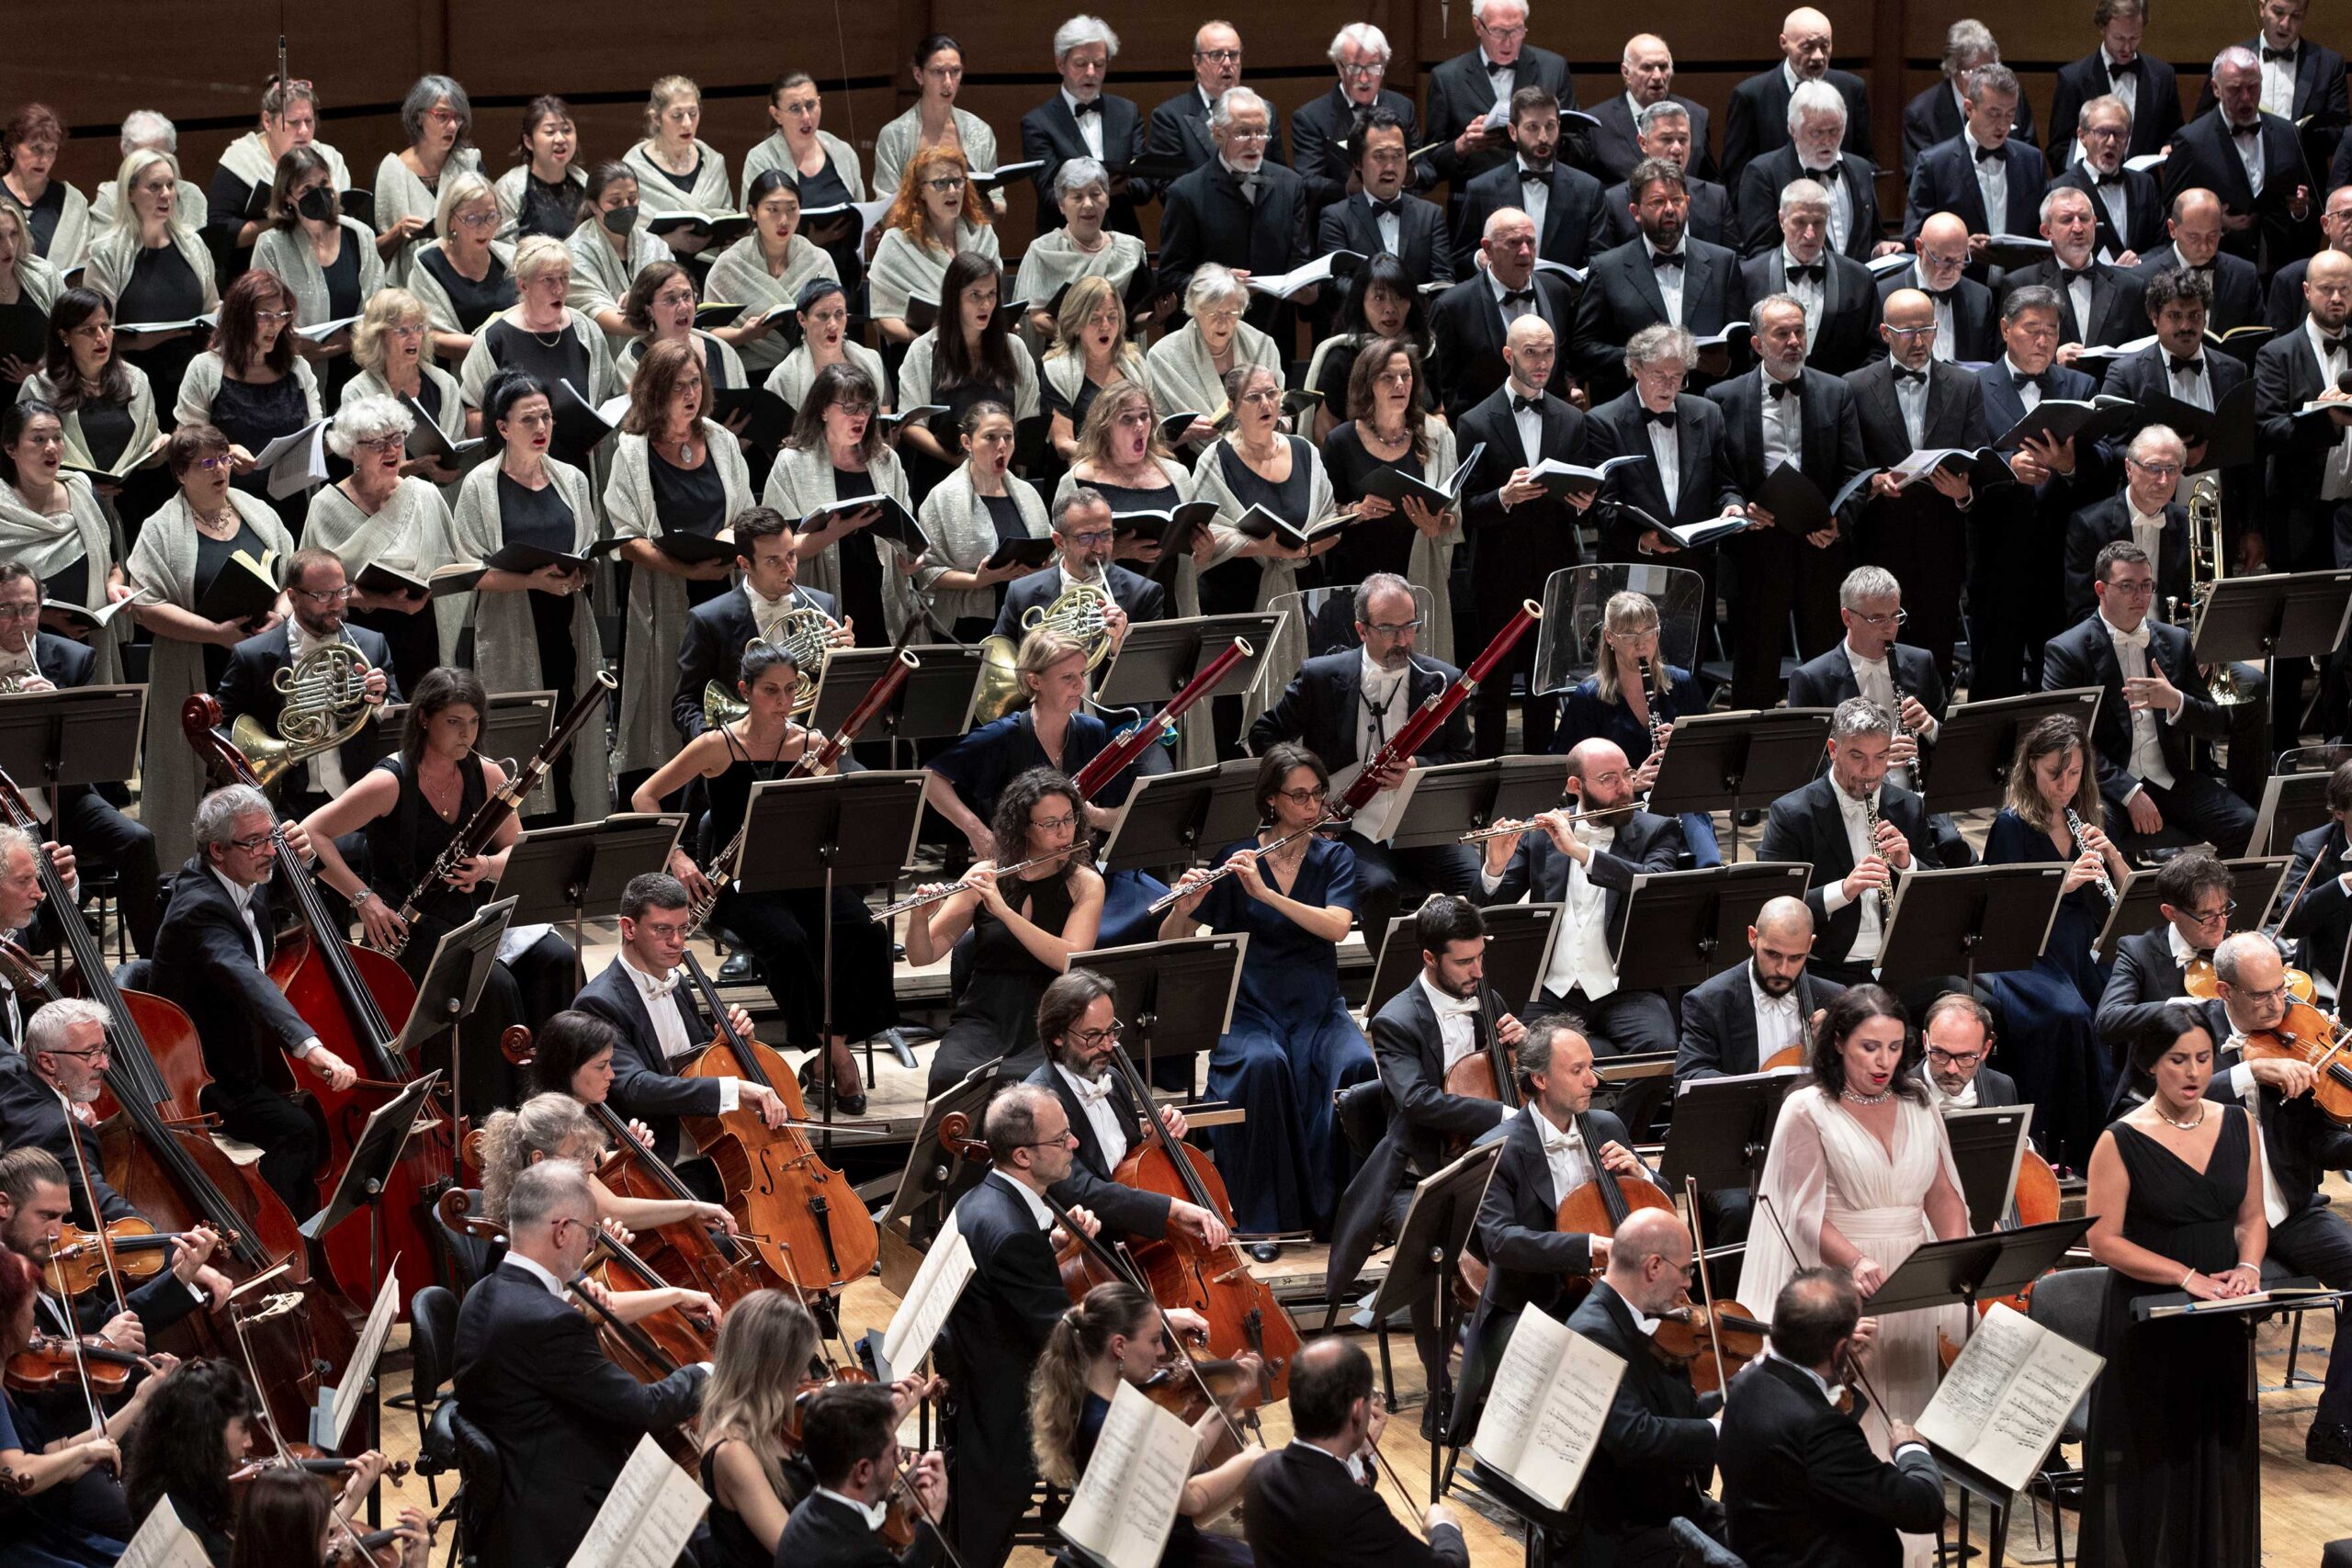 Le grandi orchestre sinfoniche italiane per la prima volta insieme